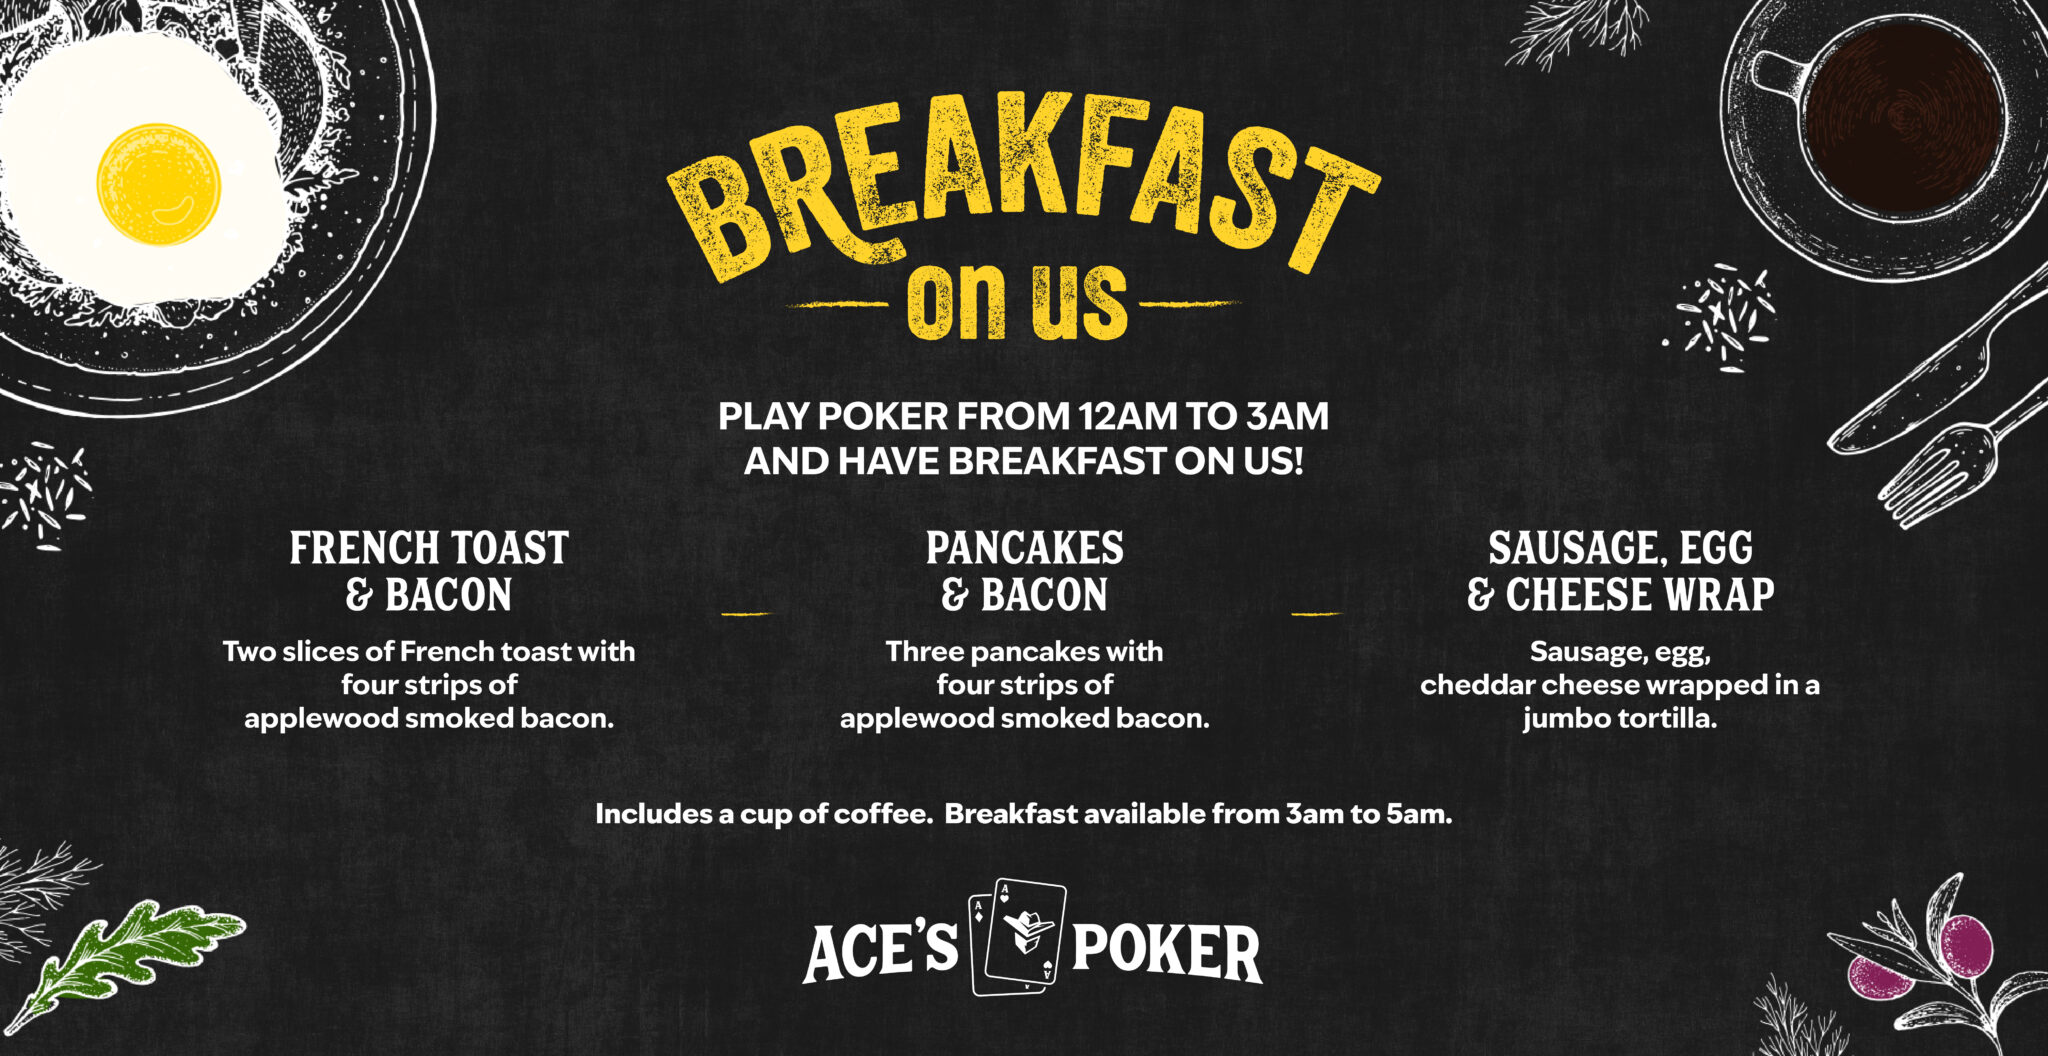 Ace's Poker Casino Mountlake Terrace | Breakfast on Us